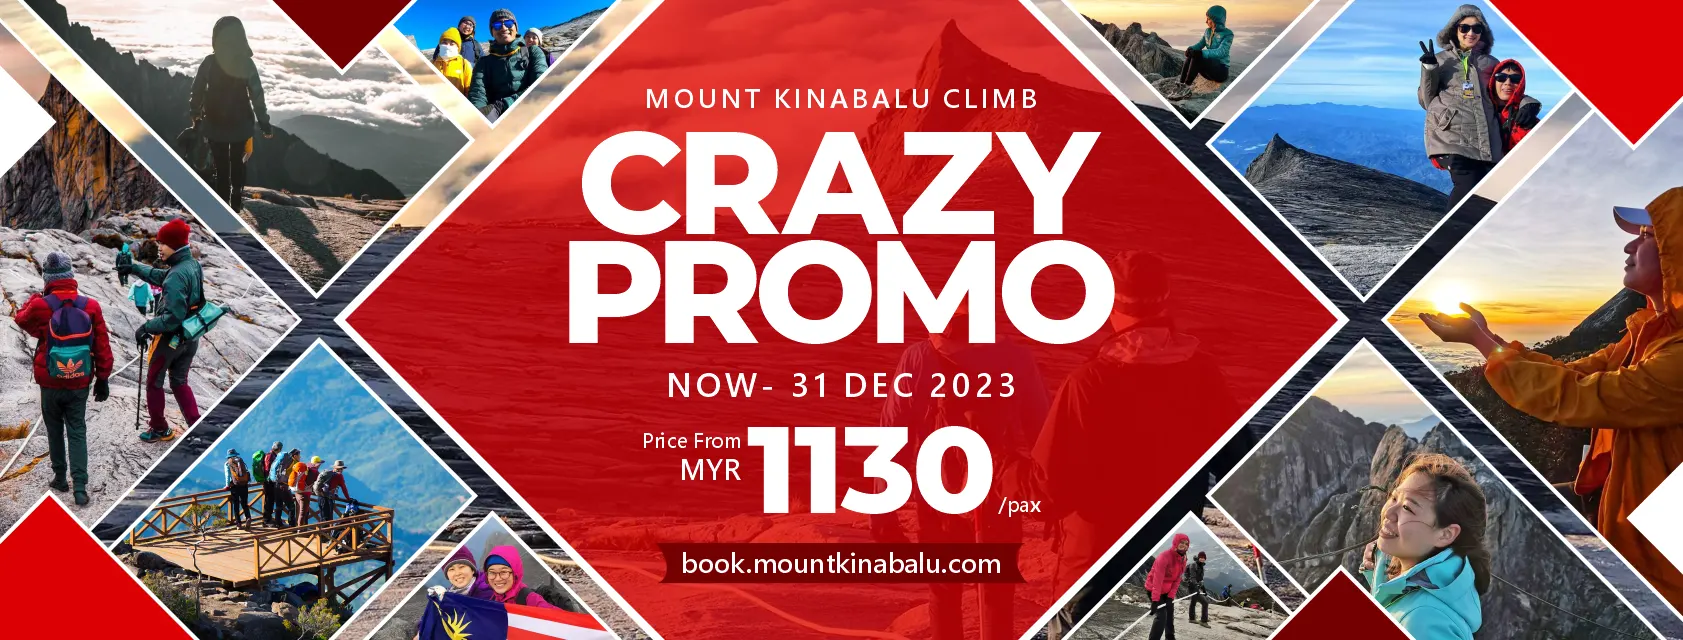 Mount Kinabalu Climb Crazy Promo book.mountkinabalu.com